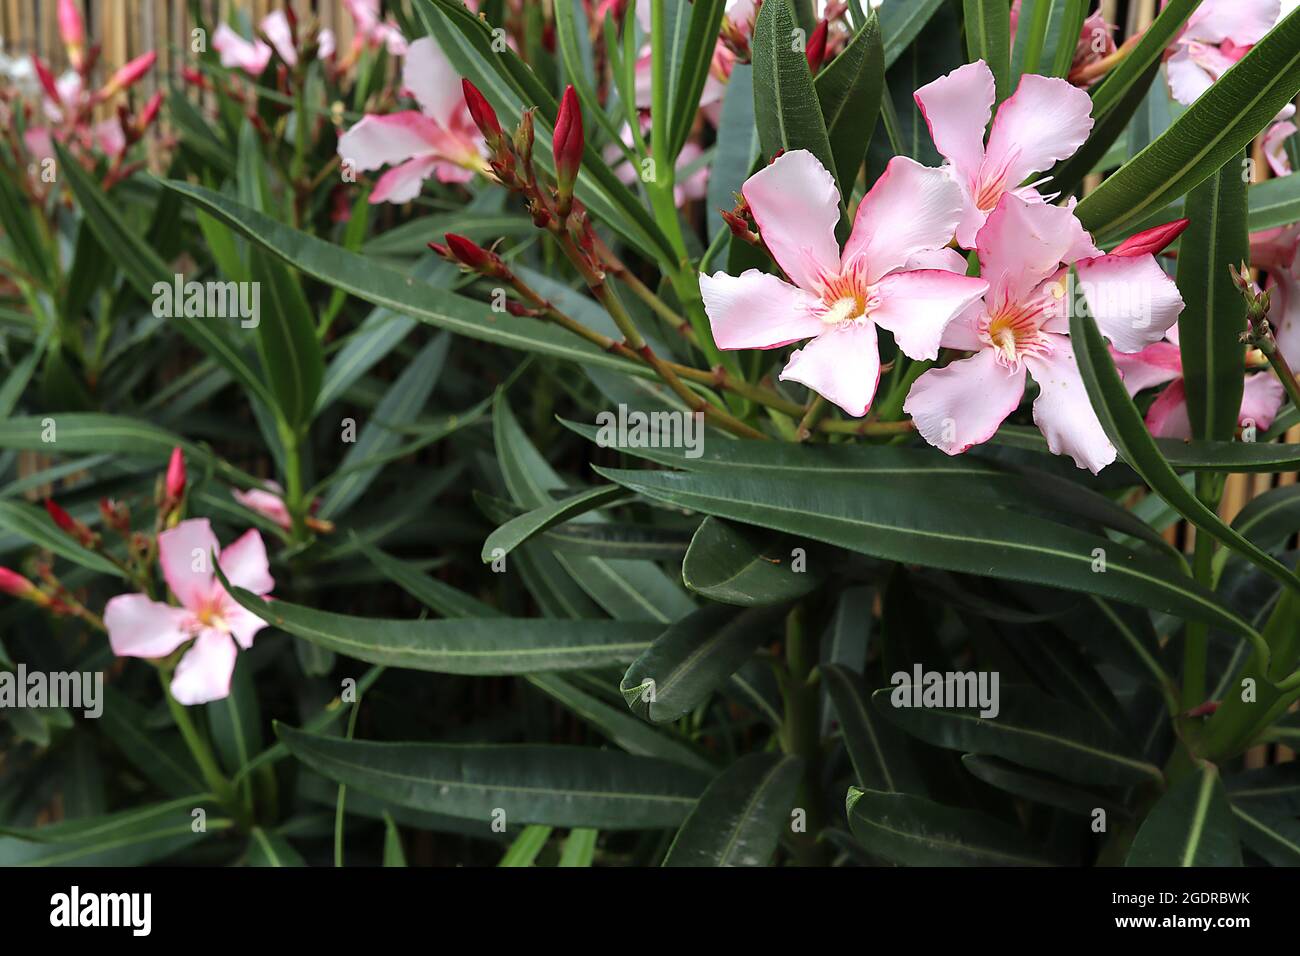 NERIUM oléander rose Calypso - grandes fleurs rose pâle en forme de salver avec col rayé rose et feuilles étroites vert foncé, juillet, Royaume-Uni Banque D'Images